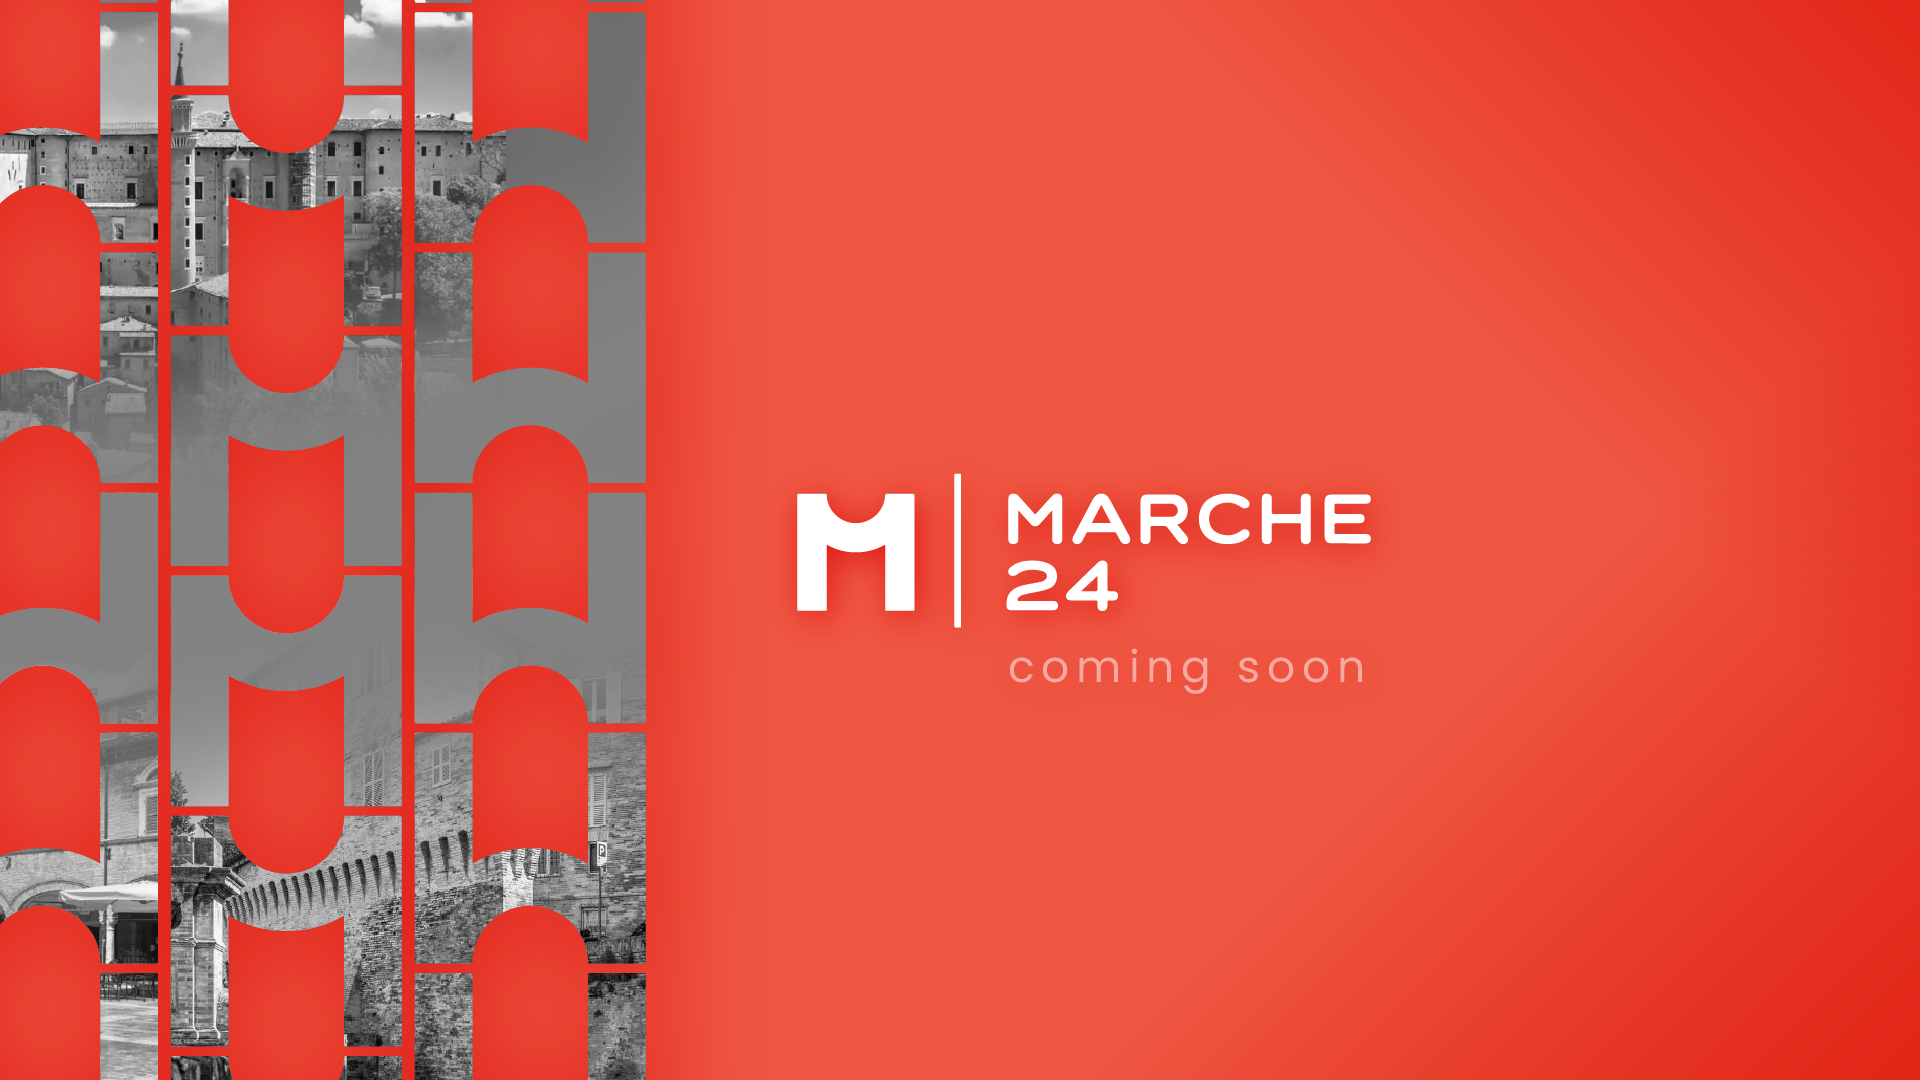 Marche24 logo